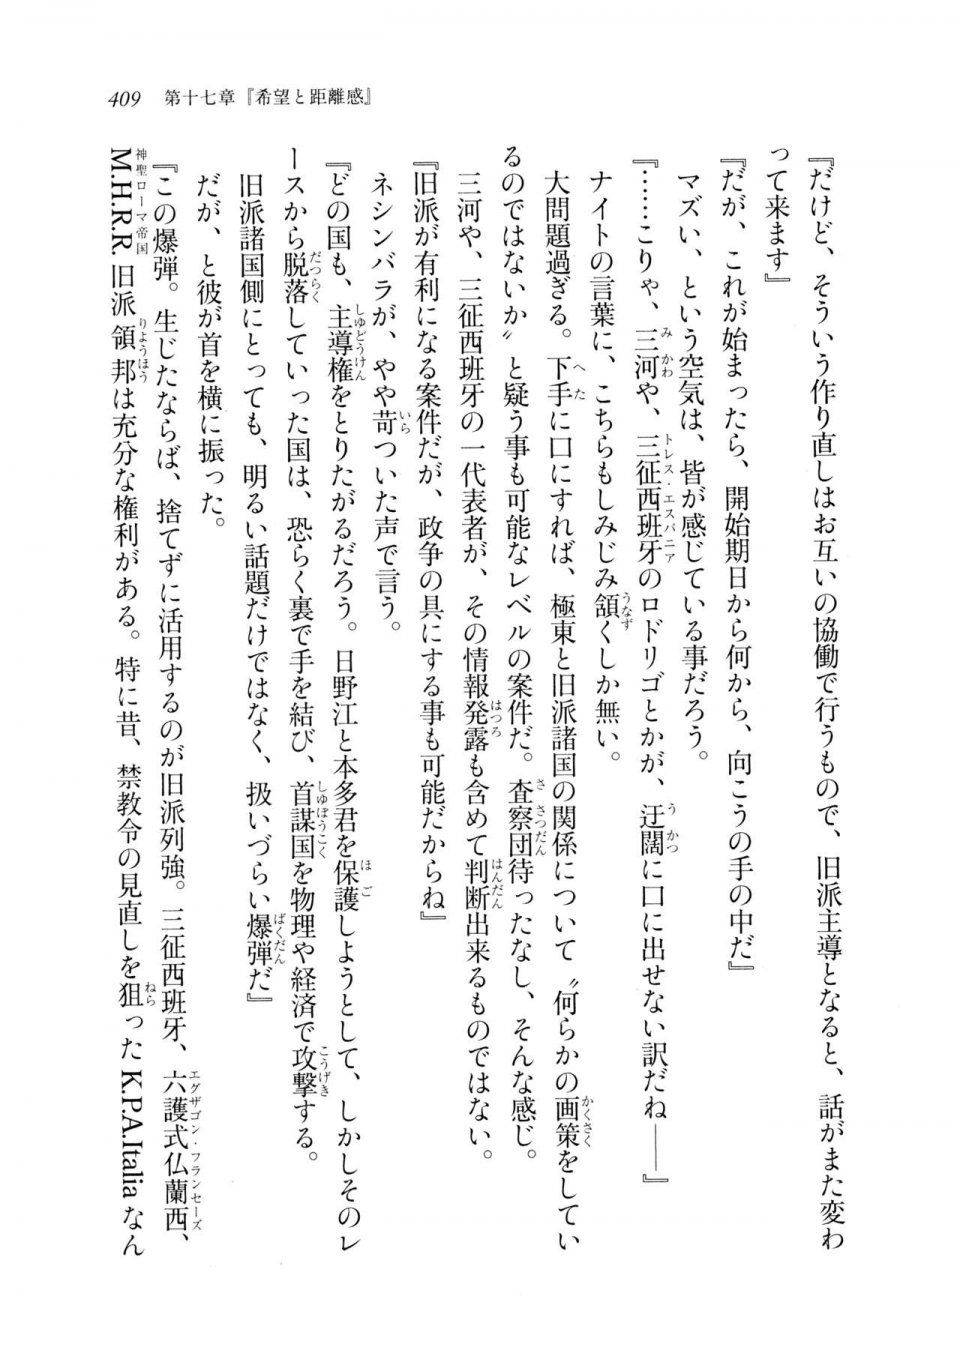 Kyoukai Senjou no Horizon LN Sidestory Vol 2 - Photo #407